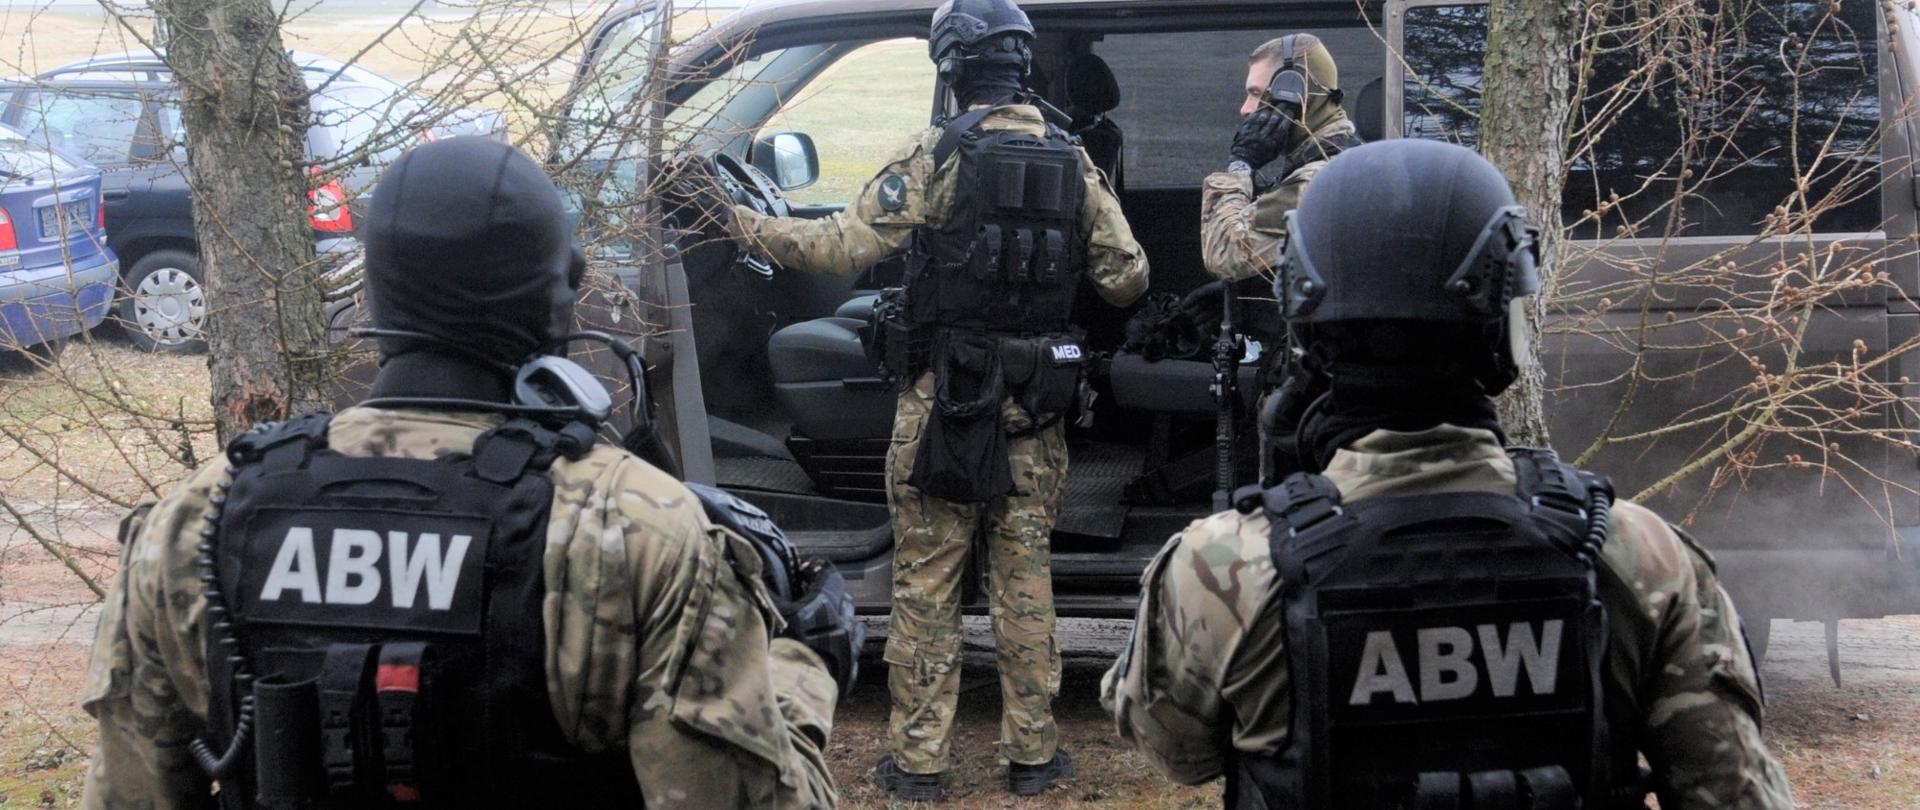 Агентство внутренней безопасности задерживает подозреваемых в работе на Россию (Фото: Gov.pl)